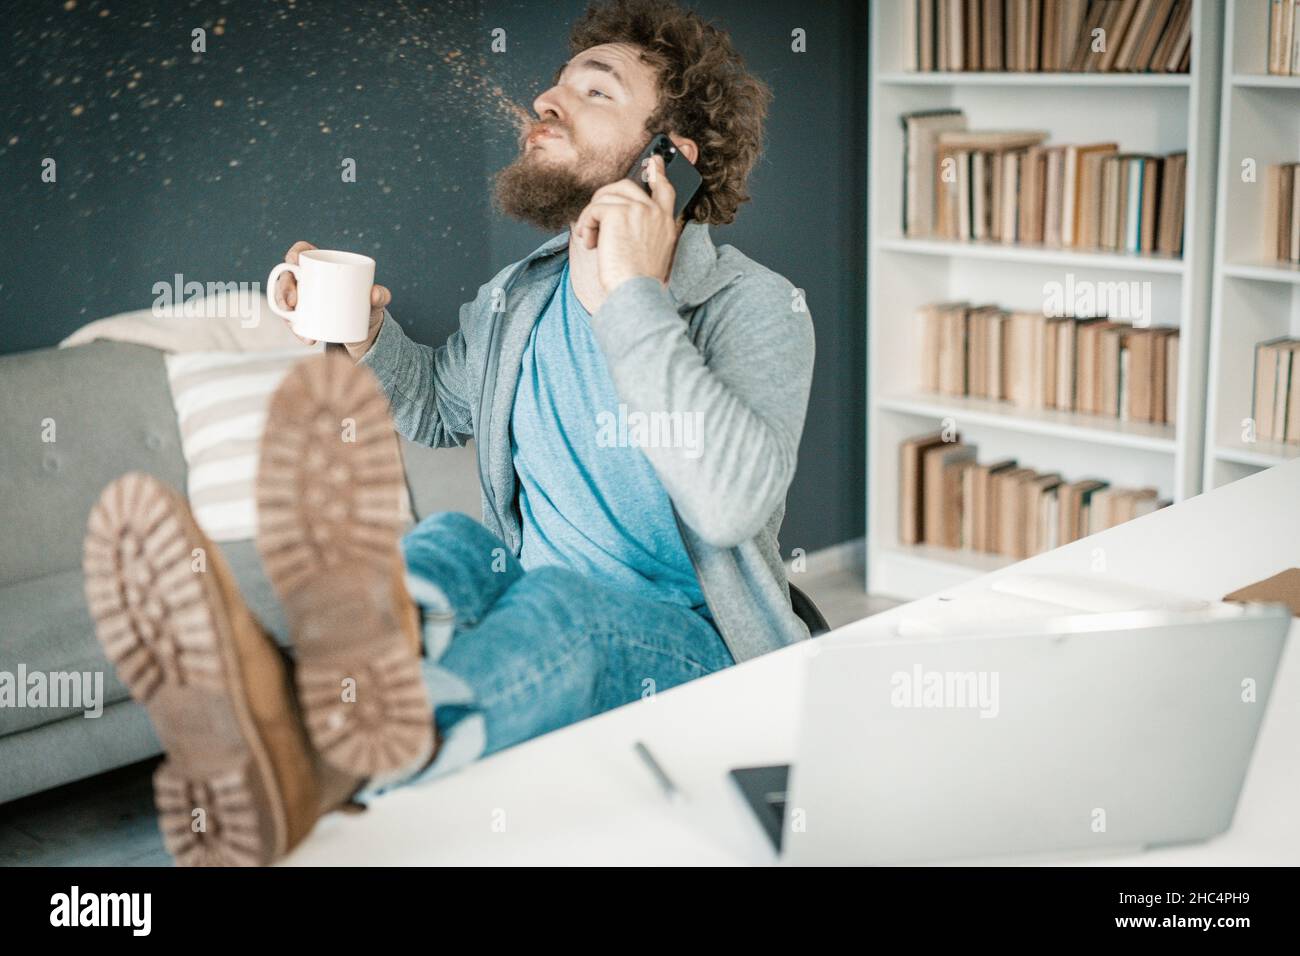 Überraschender Mensch hört die Nachrichten auf seinem Smartphone und sput Kaffee aus. Der Mann hat Beine auf dem Tisch und einen Becher Kaffee in der Hand. Nahaufnahme. Bücherregale Hintergrund. Hochwertige Fotos Stockfoto